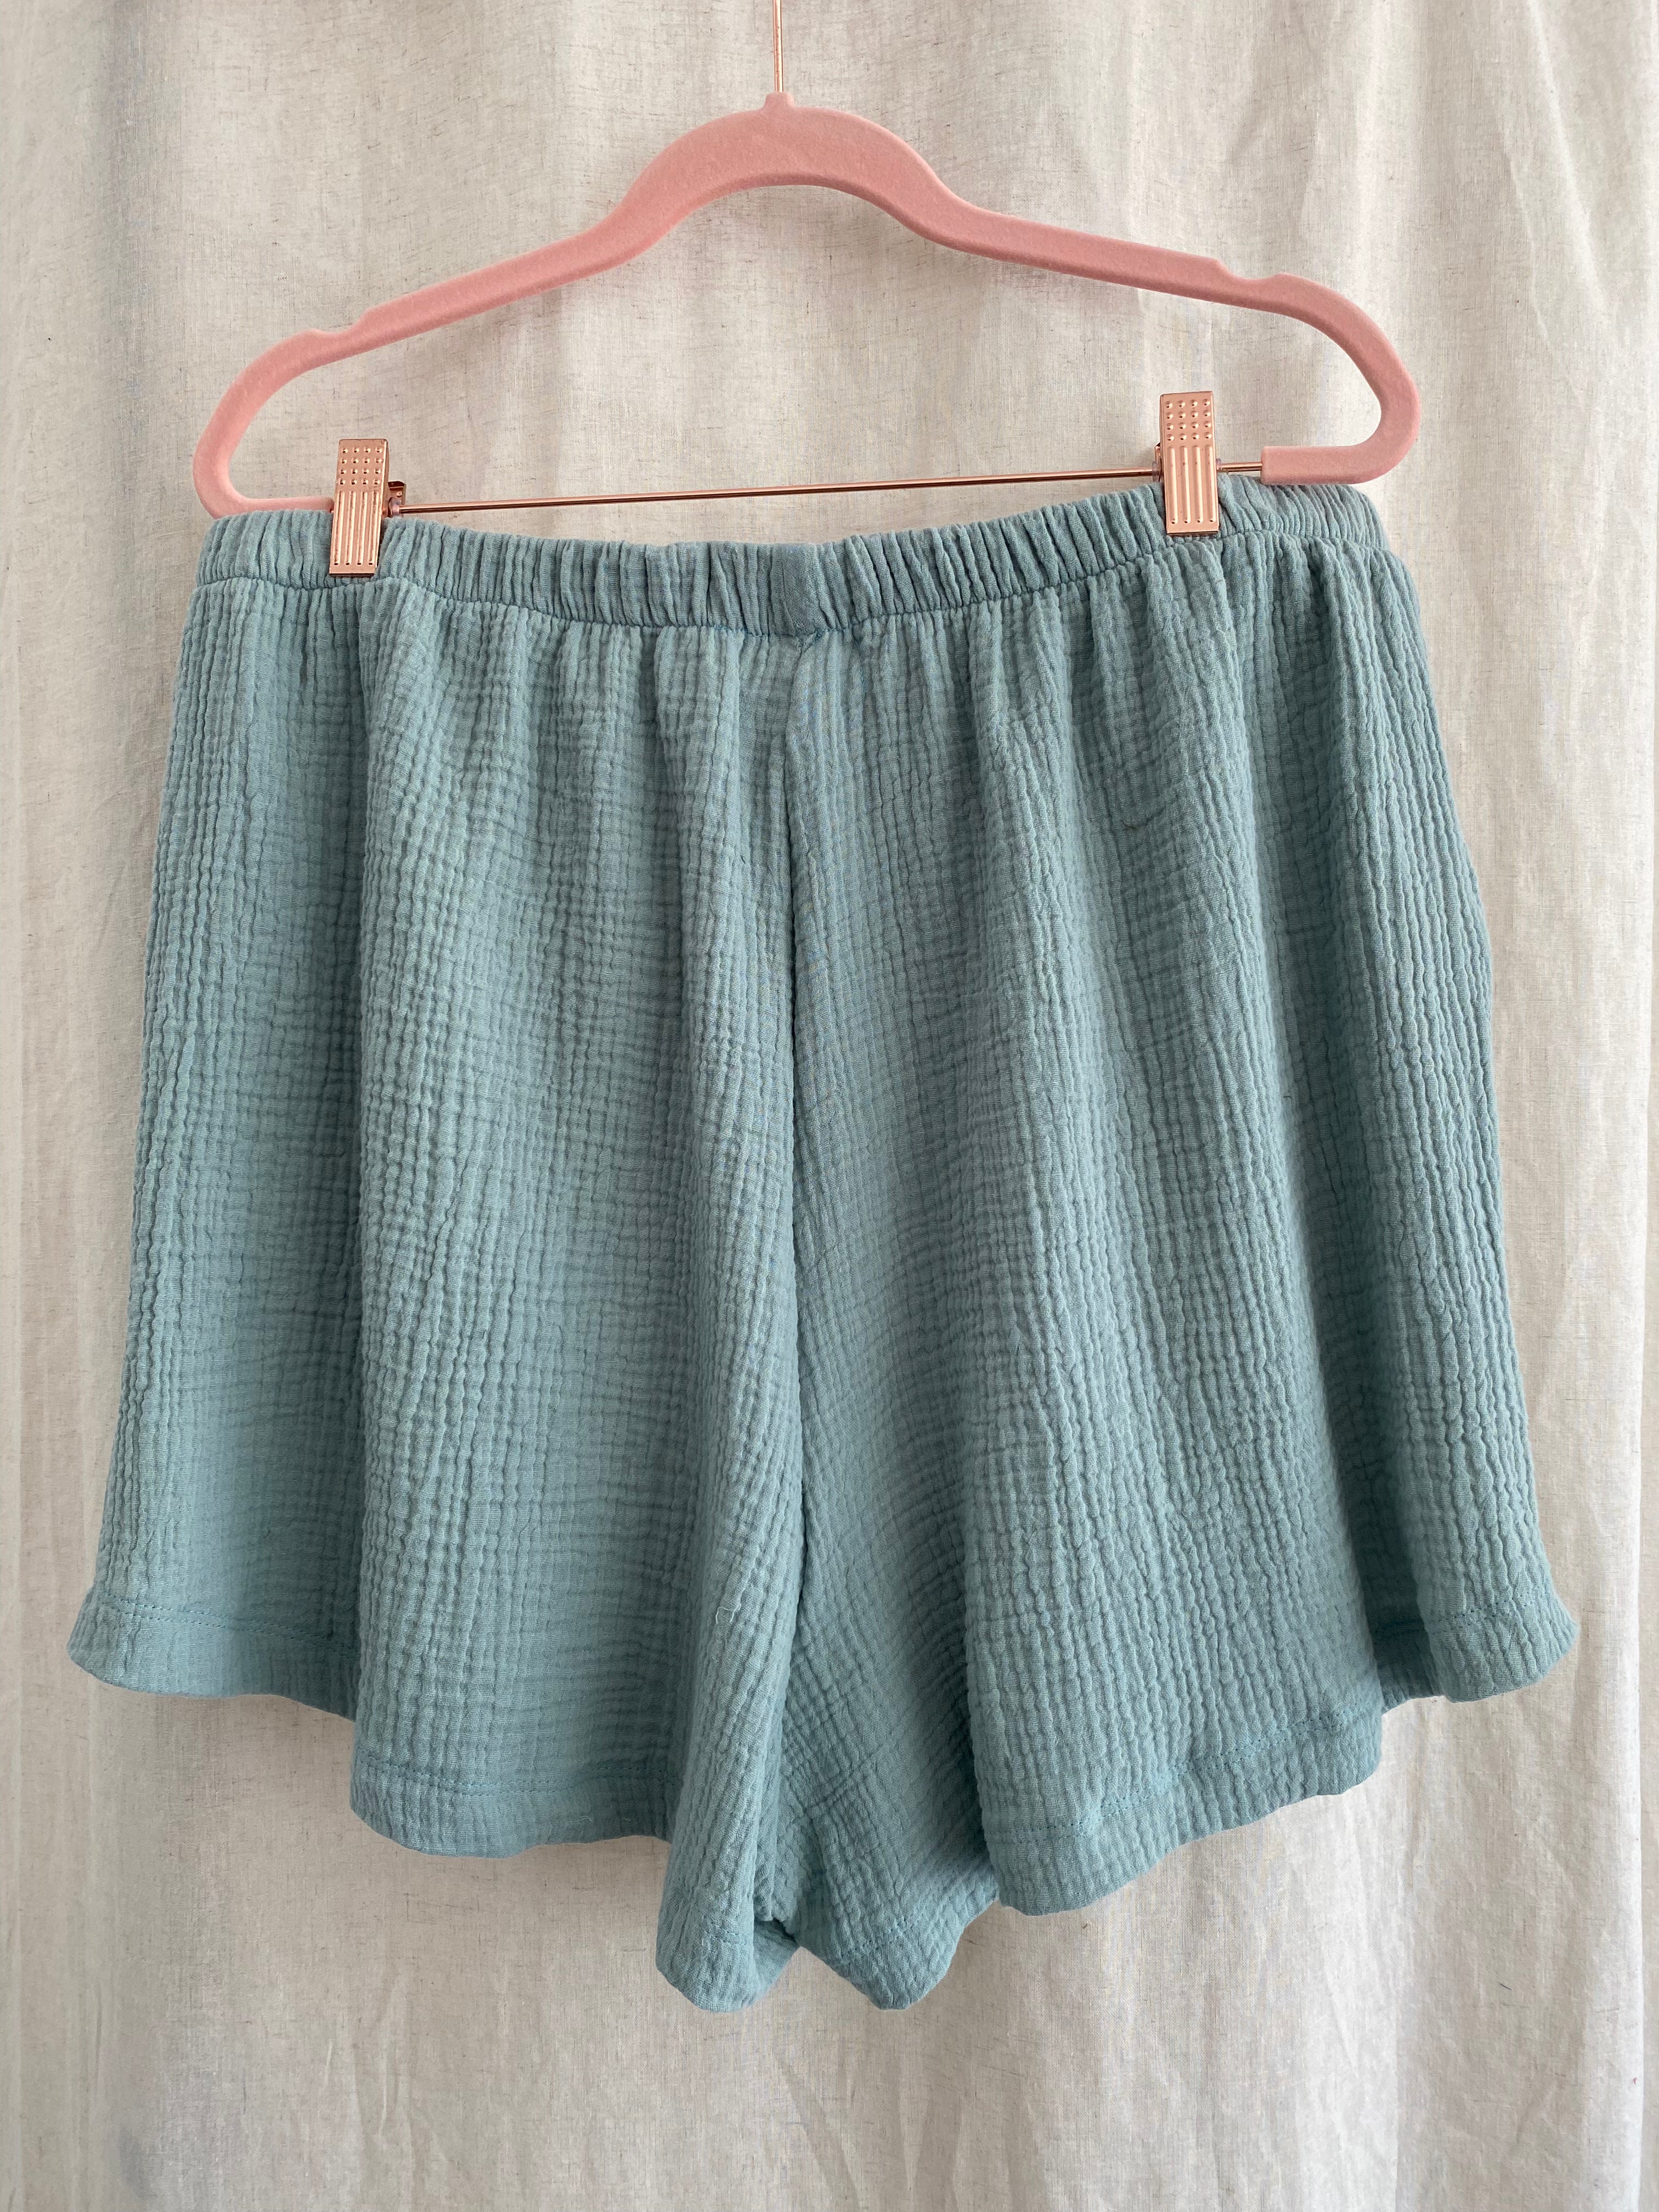 Marketplace - XL - Gauze Shorts - Mint